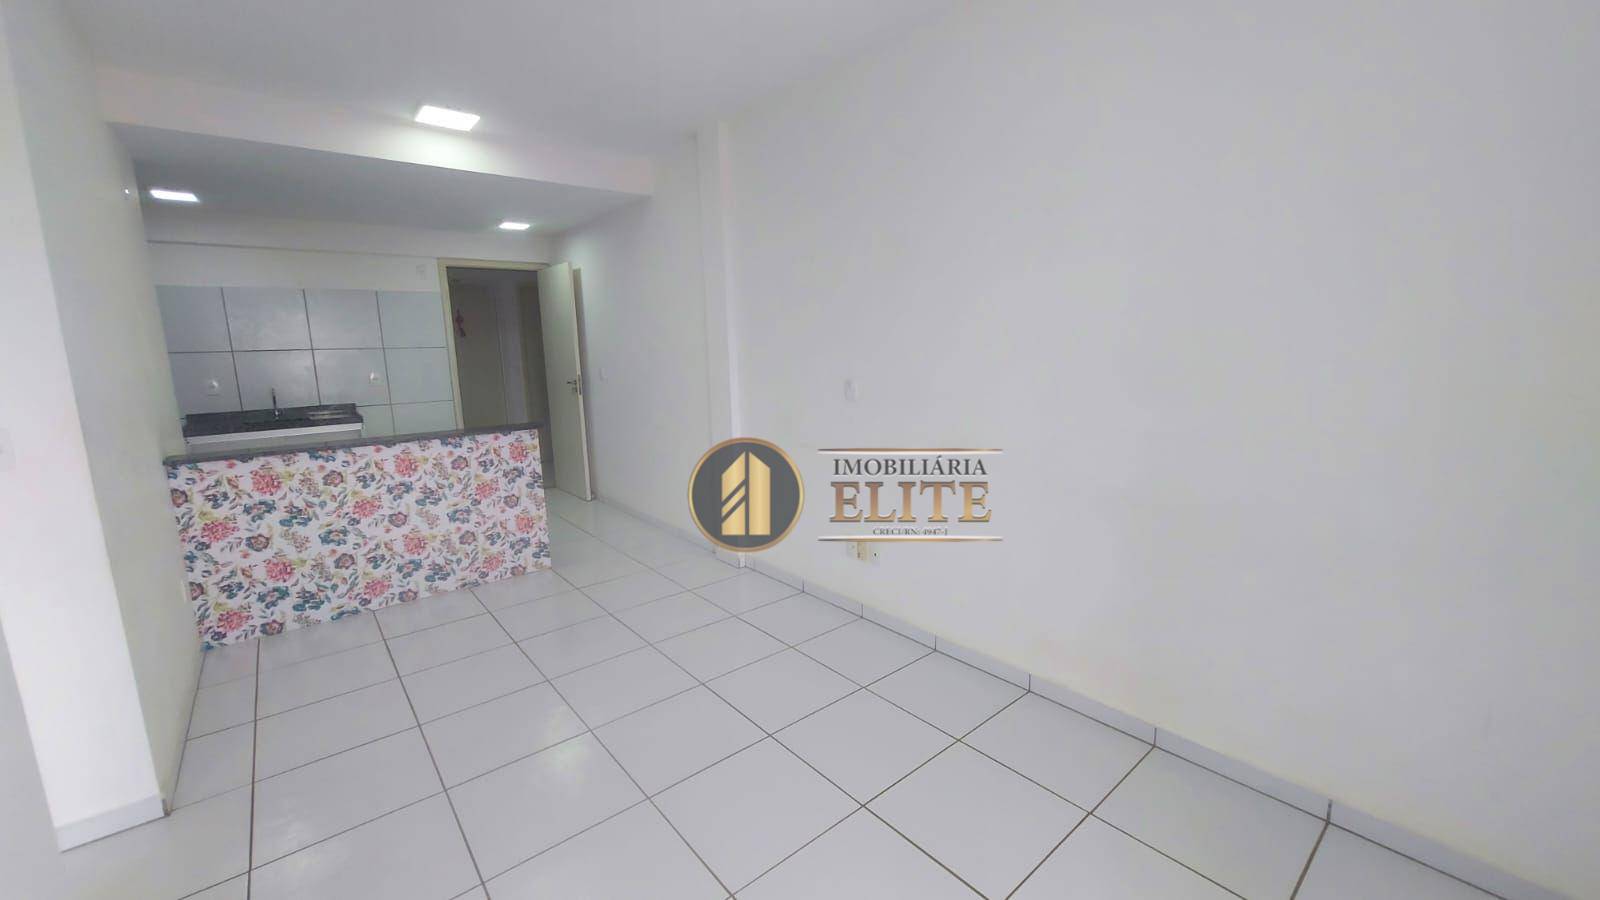 Apartamento com 2 dormitórios para alugar, 52 m² por R$ 980/mês - Passagem de Areia - Parnamirim/RN